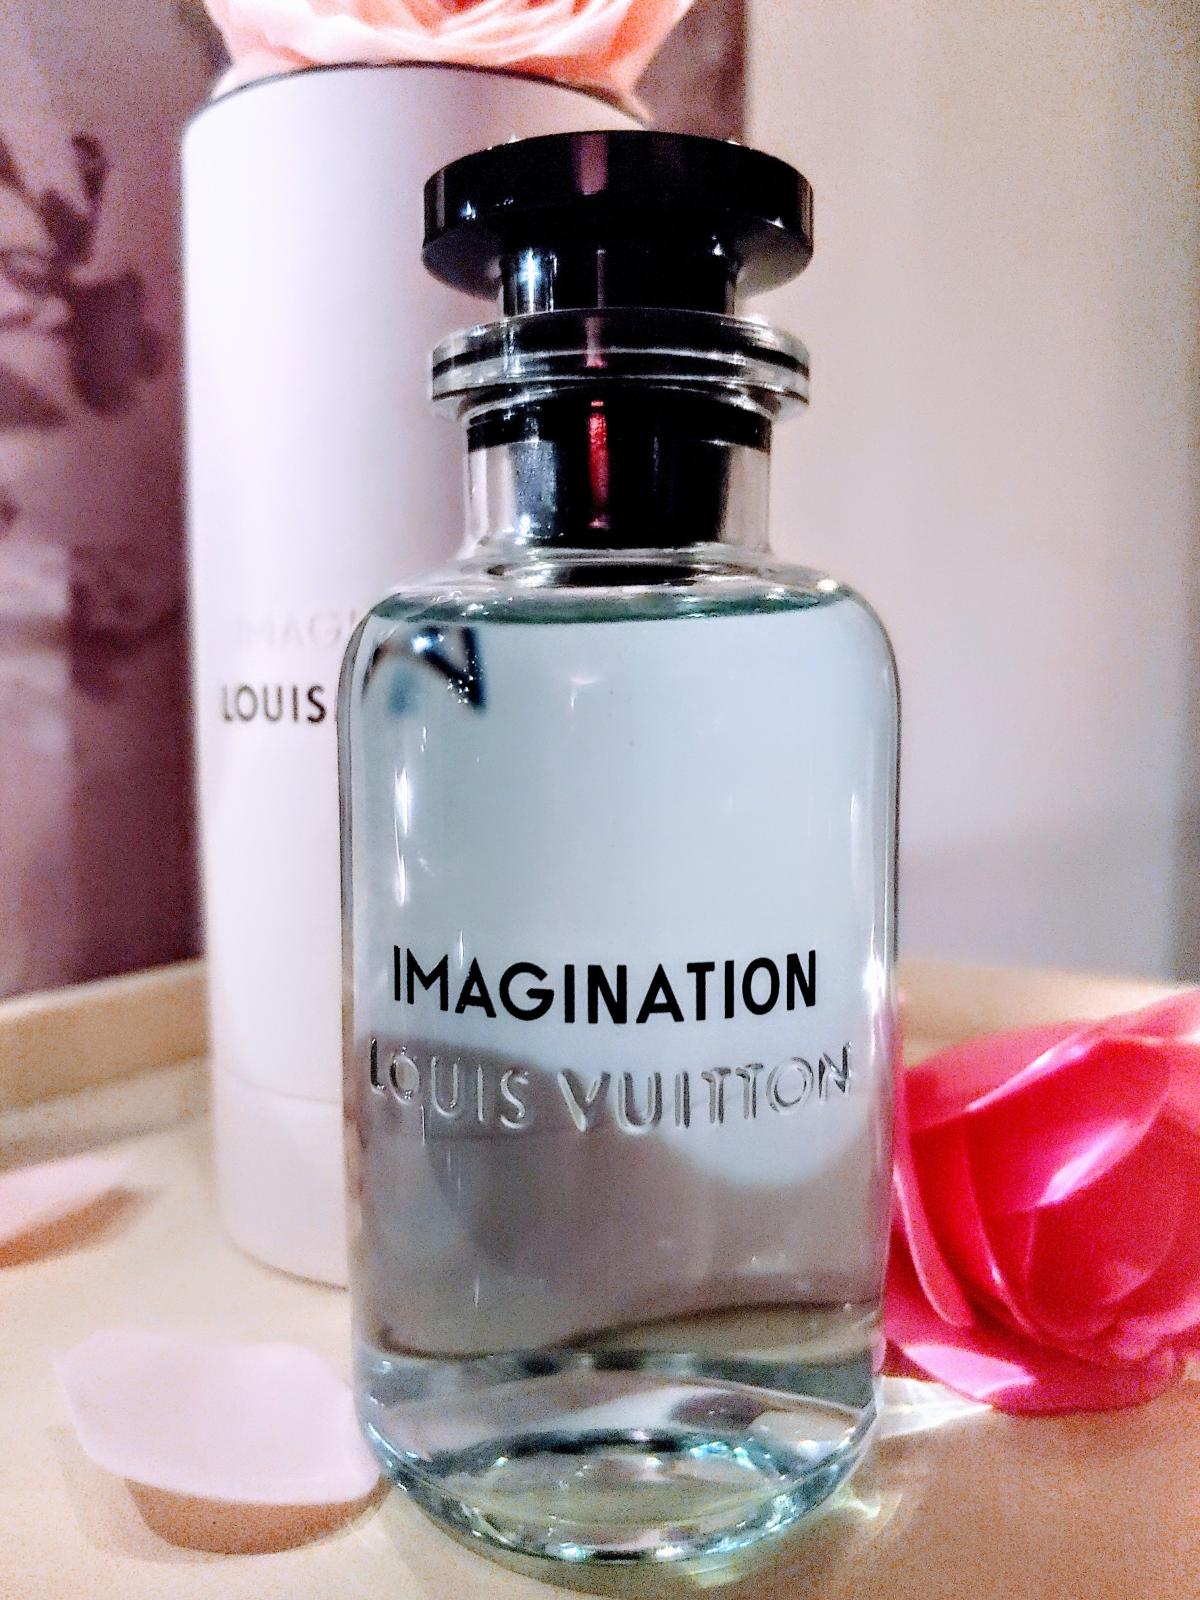 Imagination von Louis Vuitton » Meinungen & Duftbeschreibung